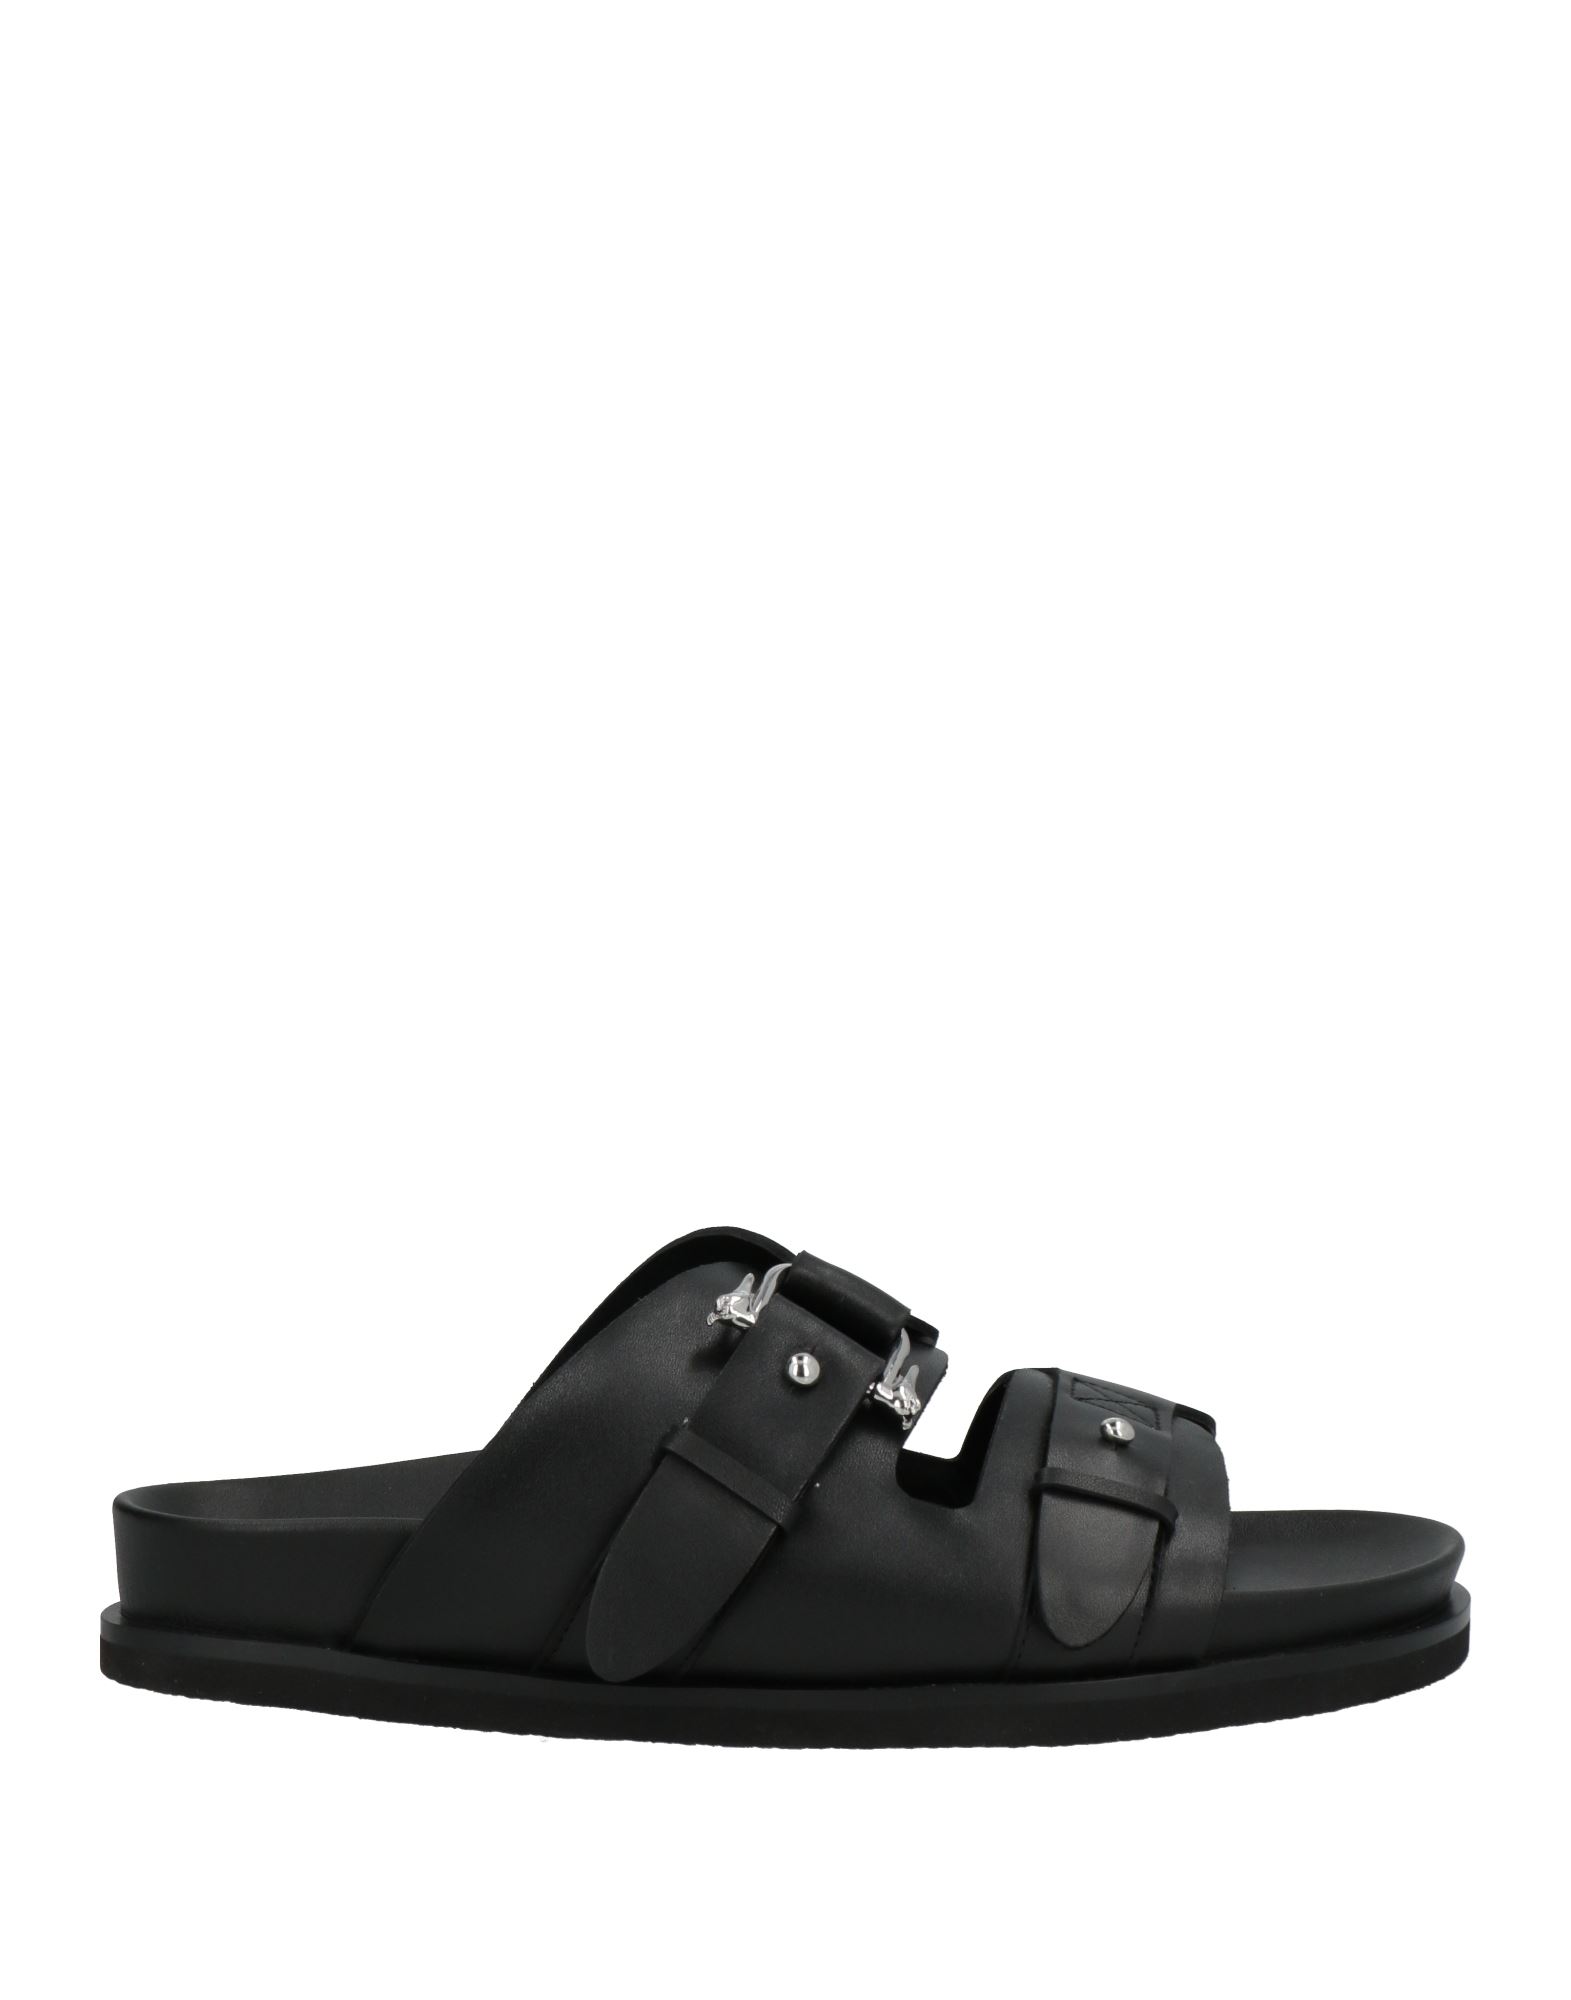 Trussardi Sandals In Black